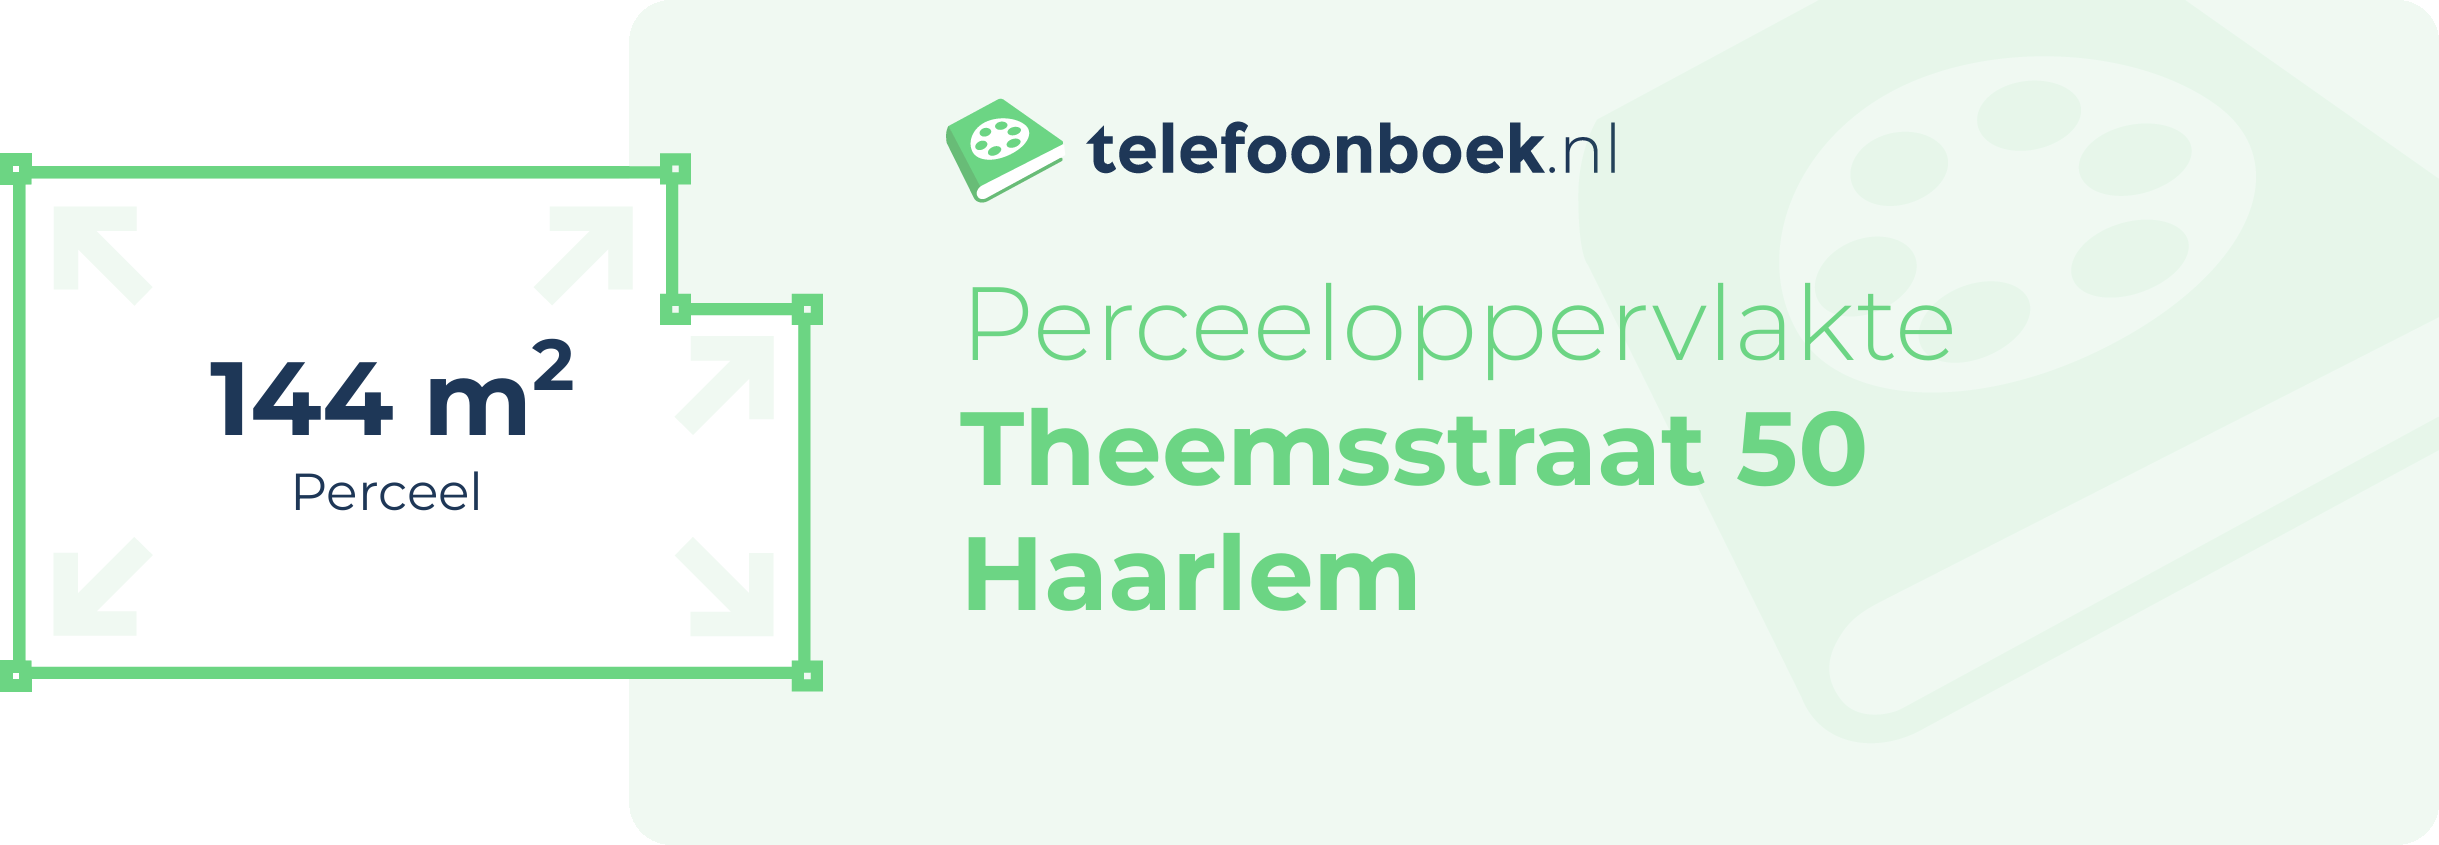 Perceeloppervlakte Theemsstraat 50 Haarlem